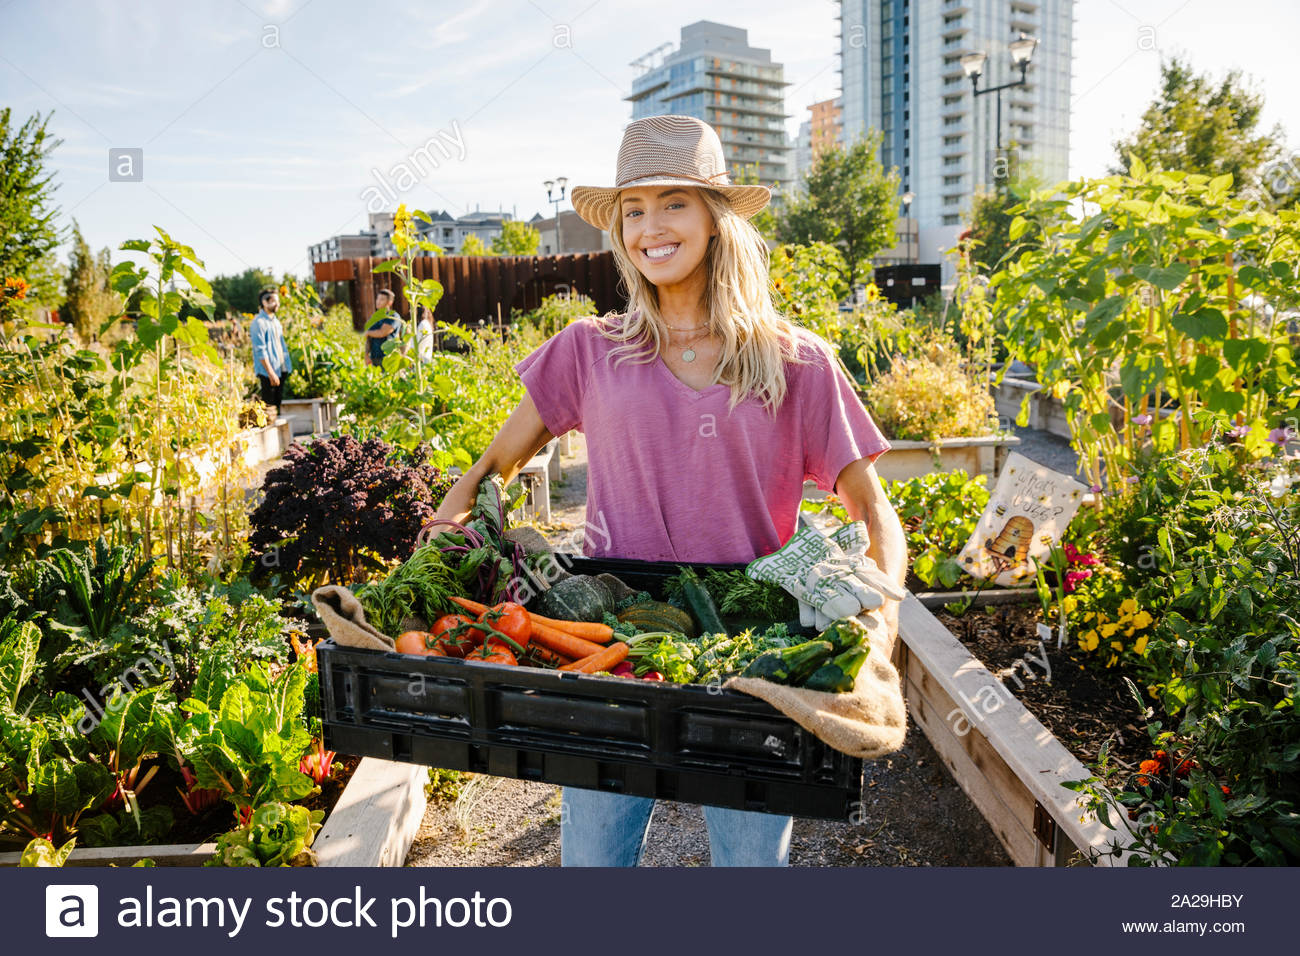 Ritratto felice, fiducioso giovane donna che trasportano freschi ortaggi raccolti nella soleggiata, urban comunità giardino Foto Stock